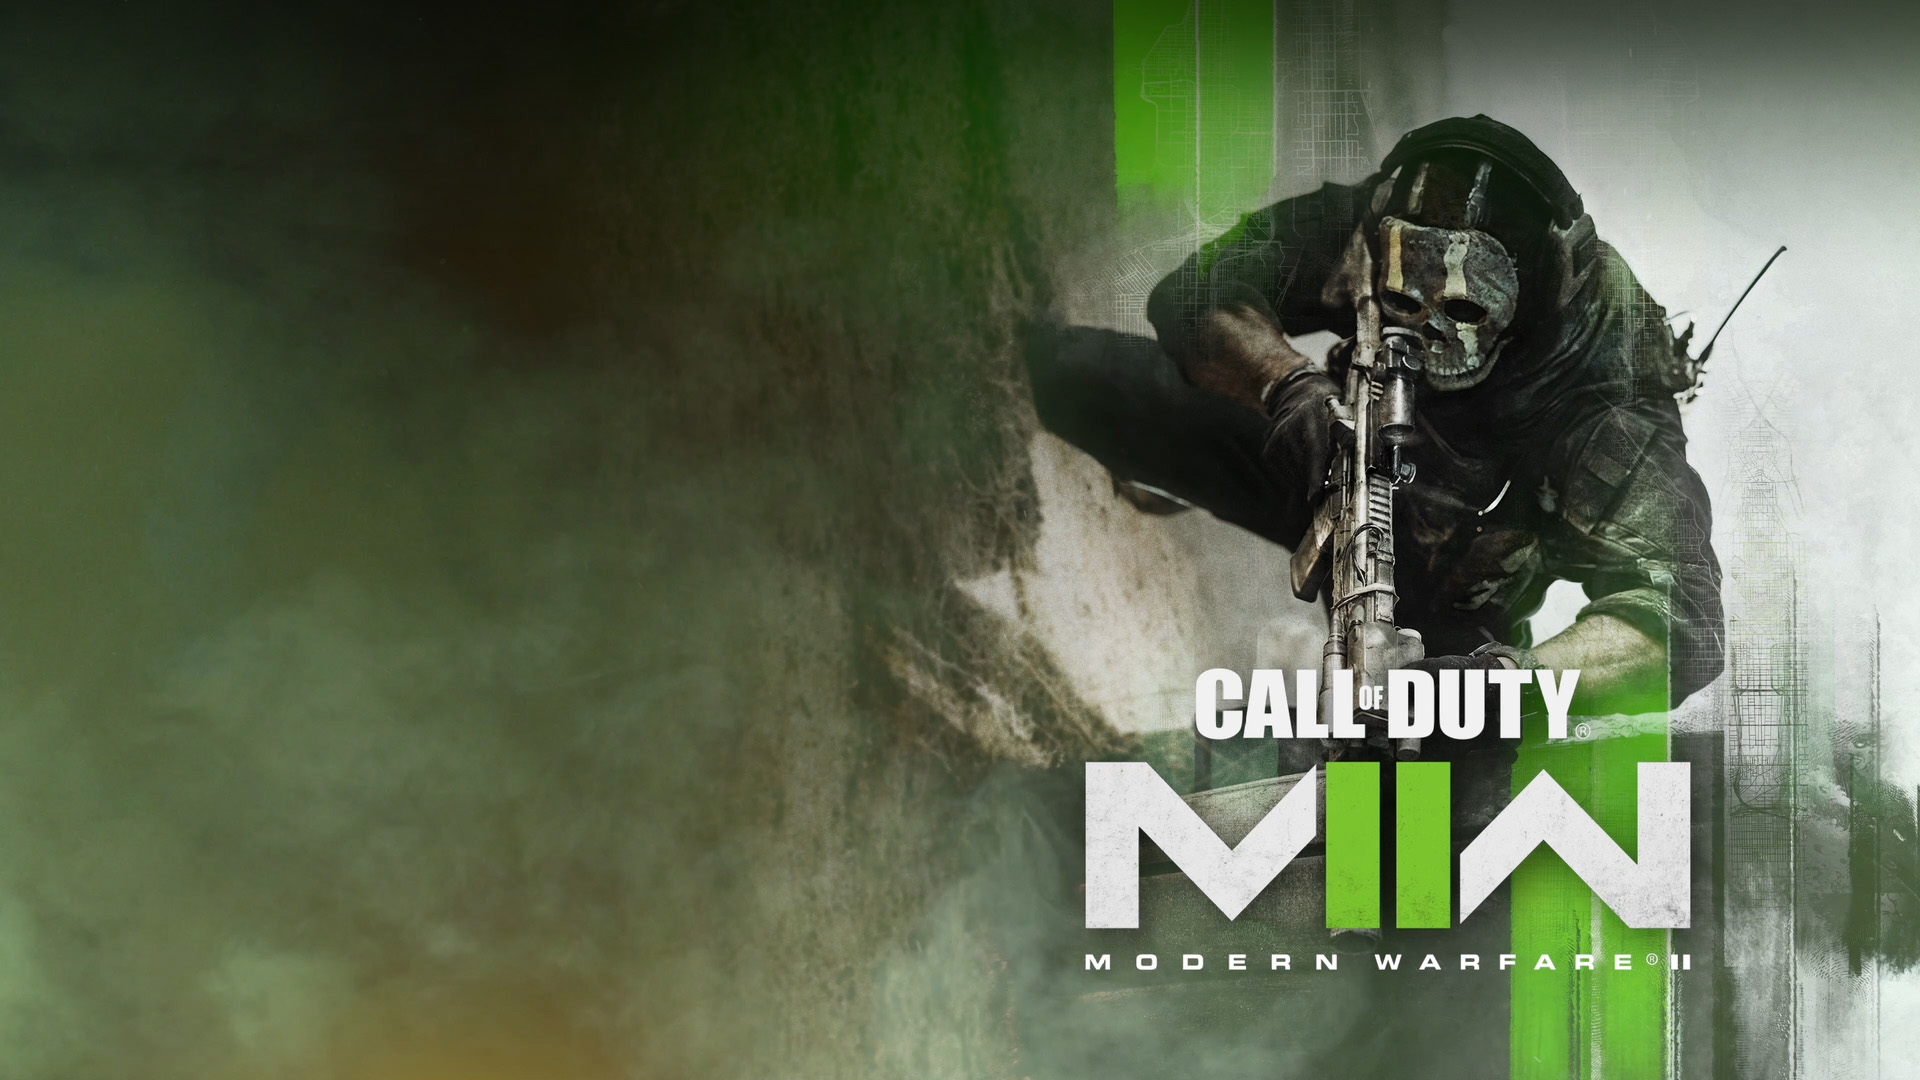 Top Guns in Call of Duty's Modern Warfare 3